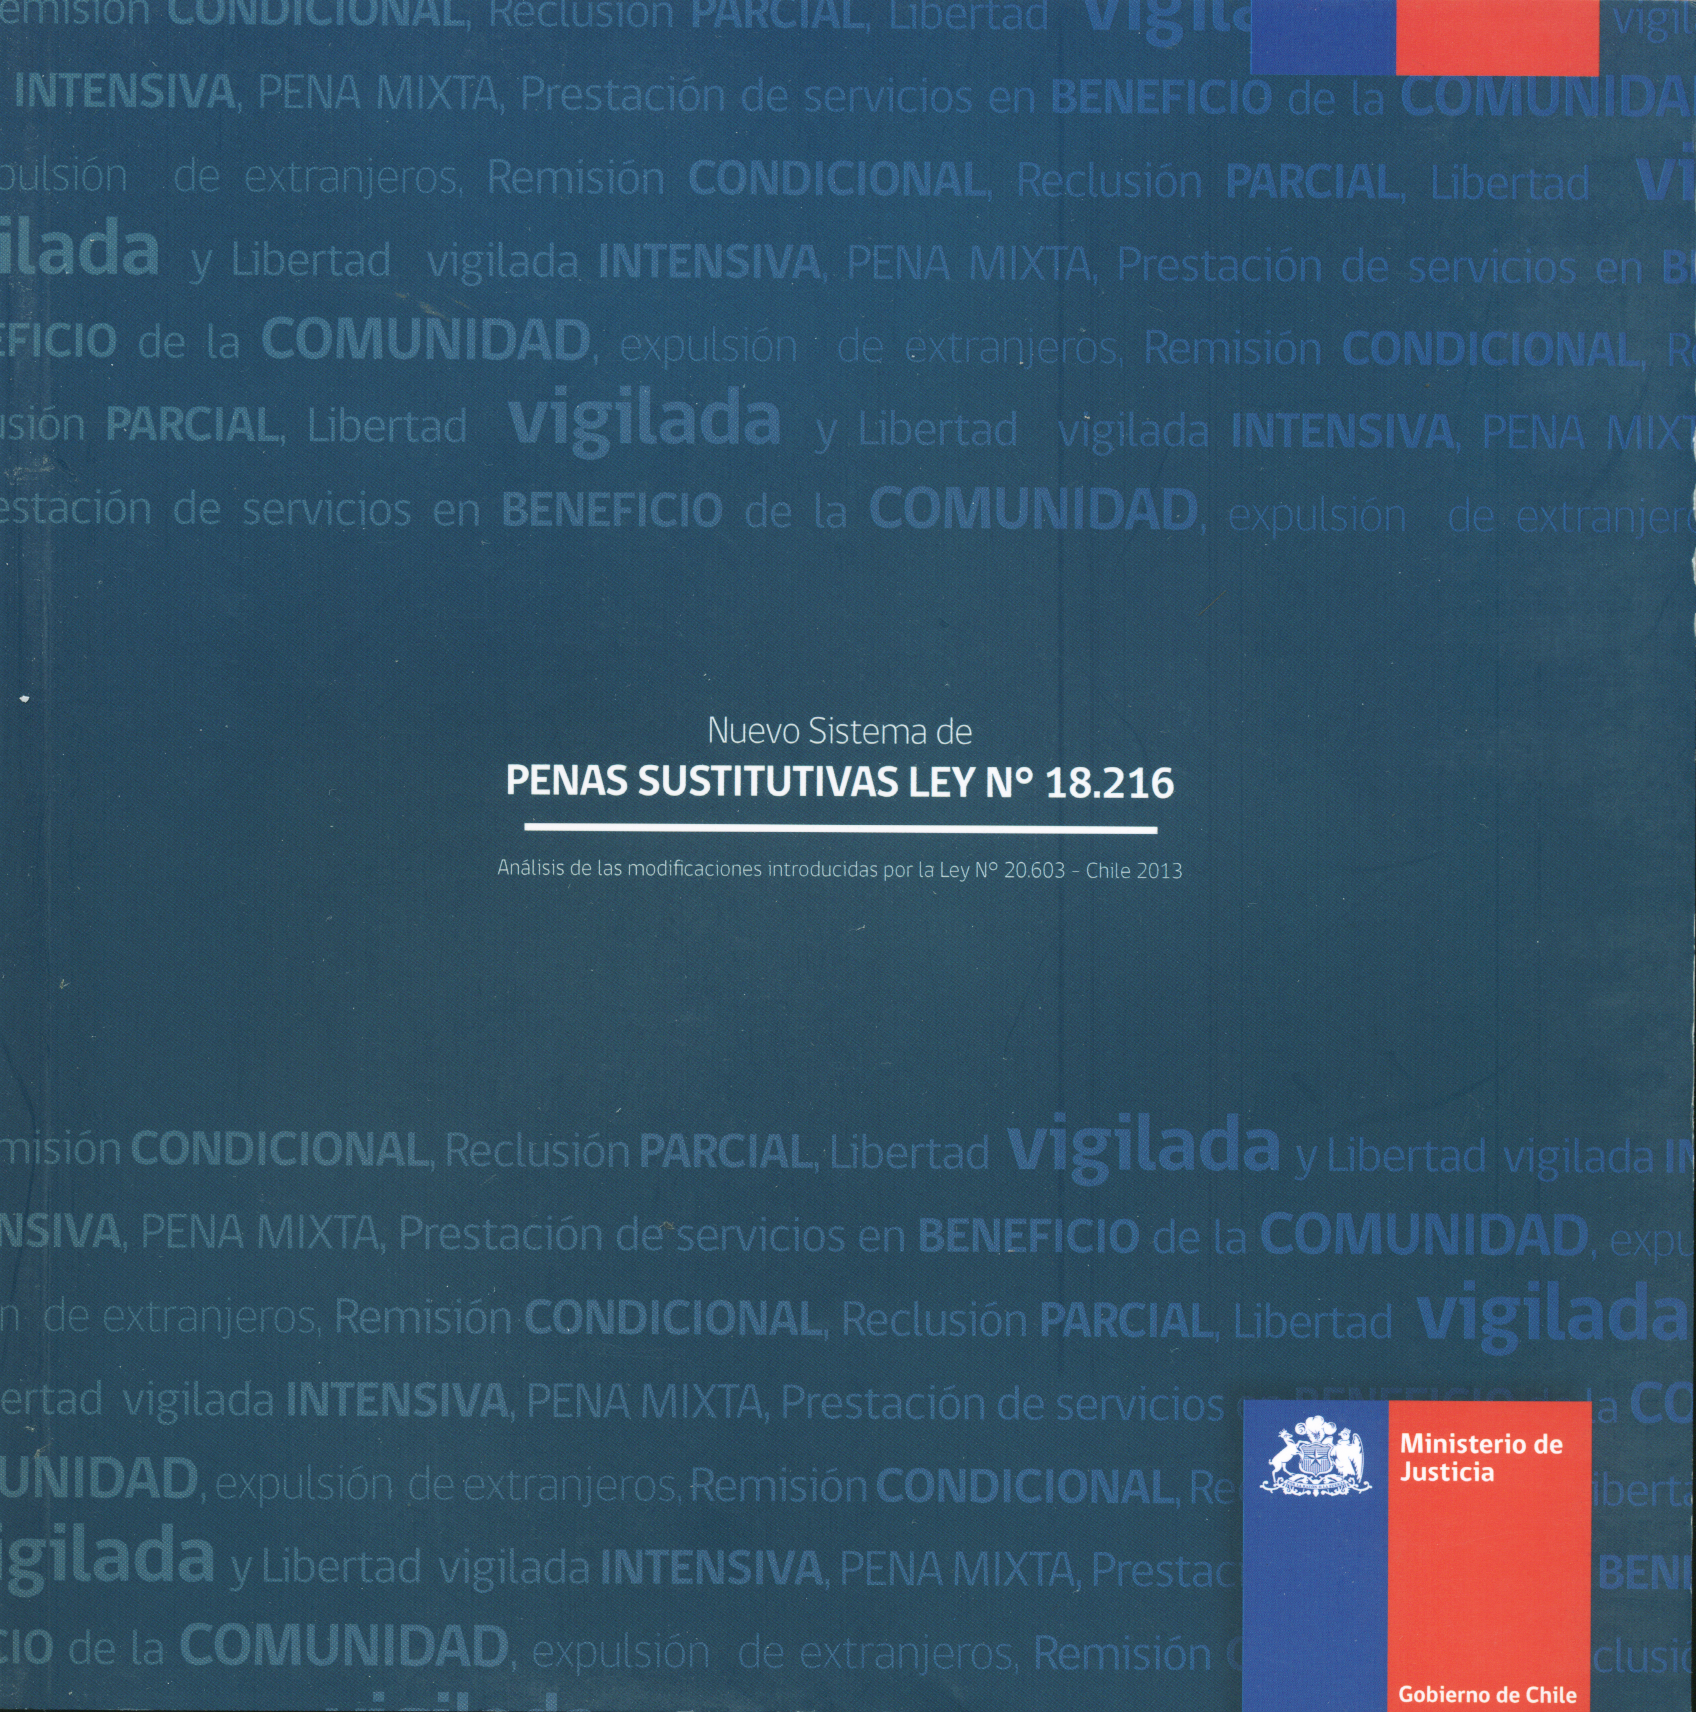 Nuevo Sistema de Penas Sustitutivas Ley n° 18.216. Análisis de las modificaciones introducidas por la Ley n° 20.603 - Chile 2013